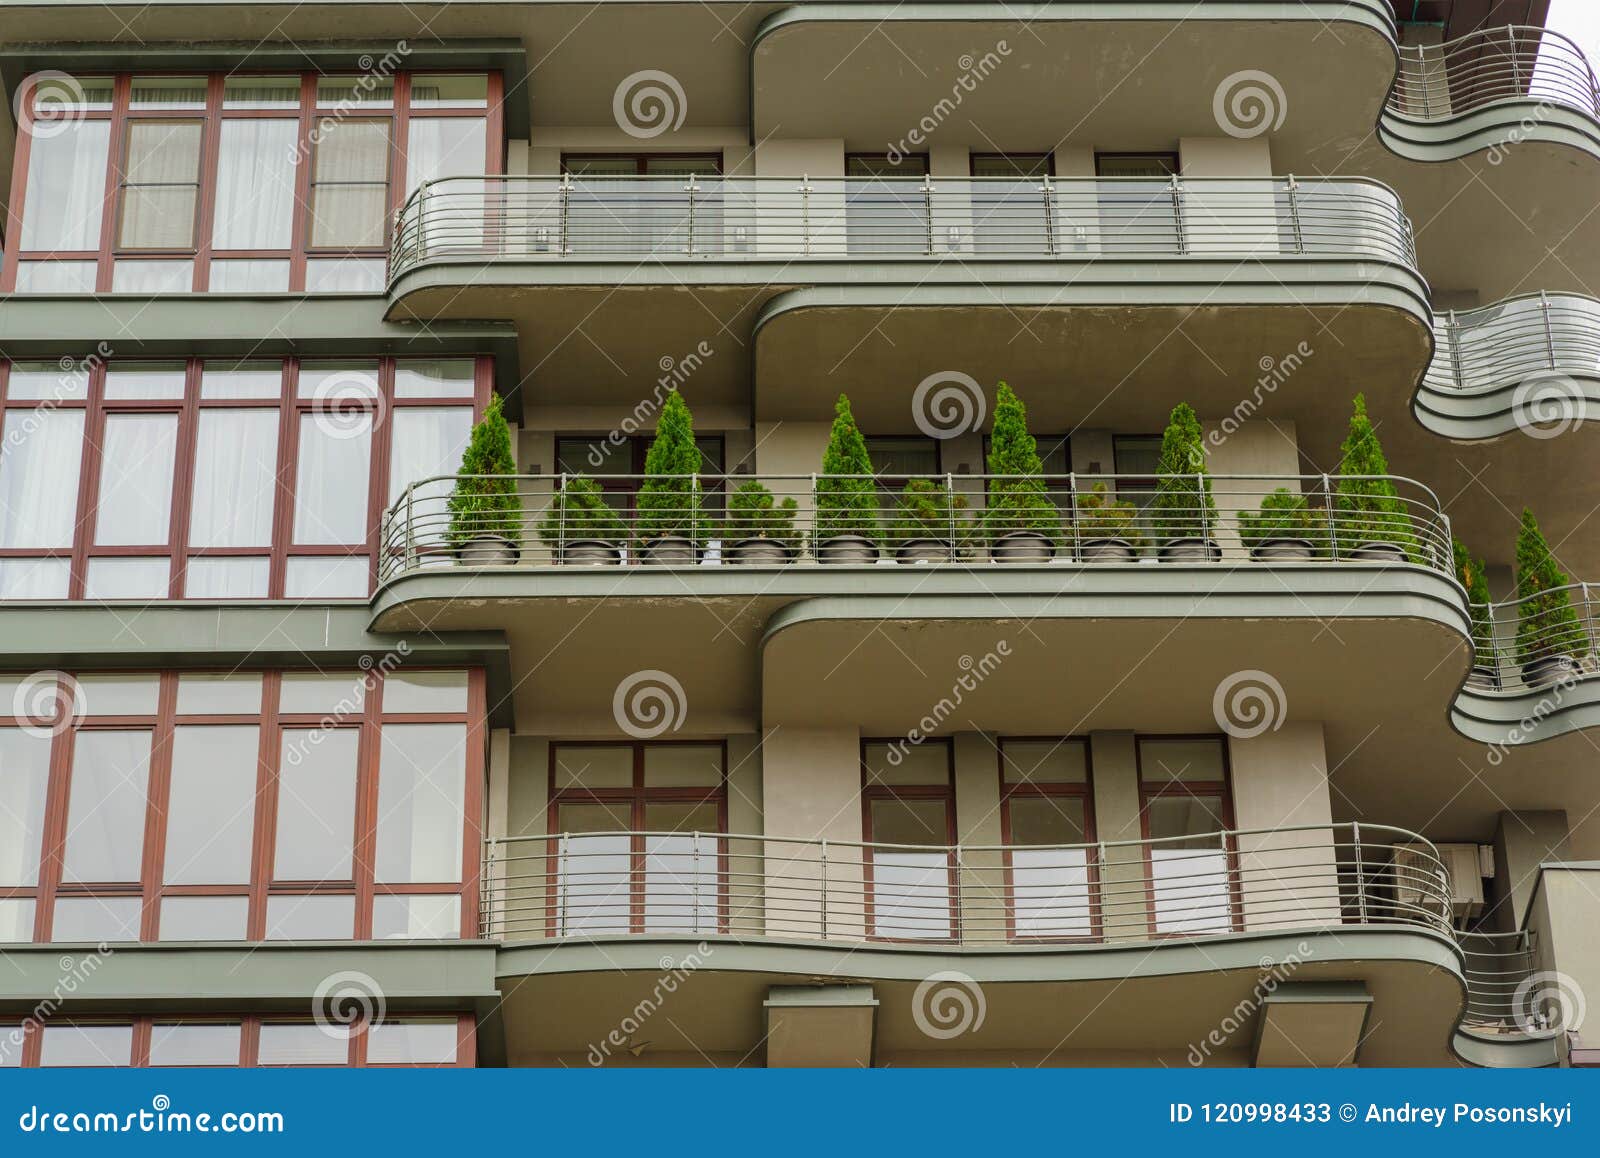 Дом с деревьями на балконах